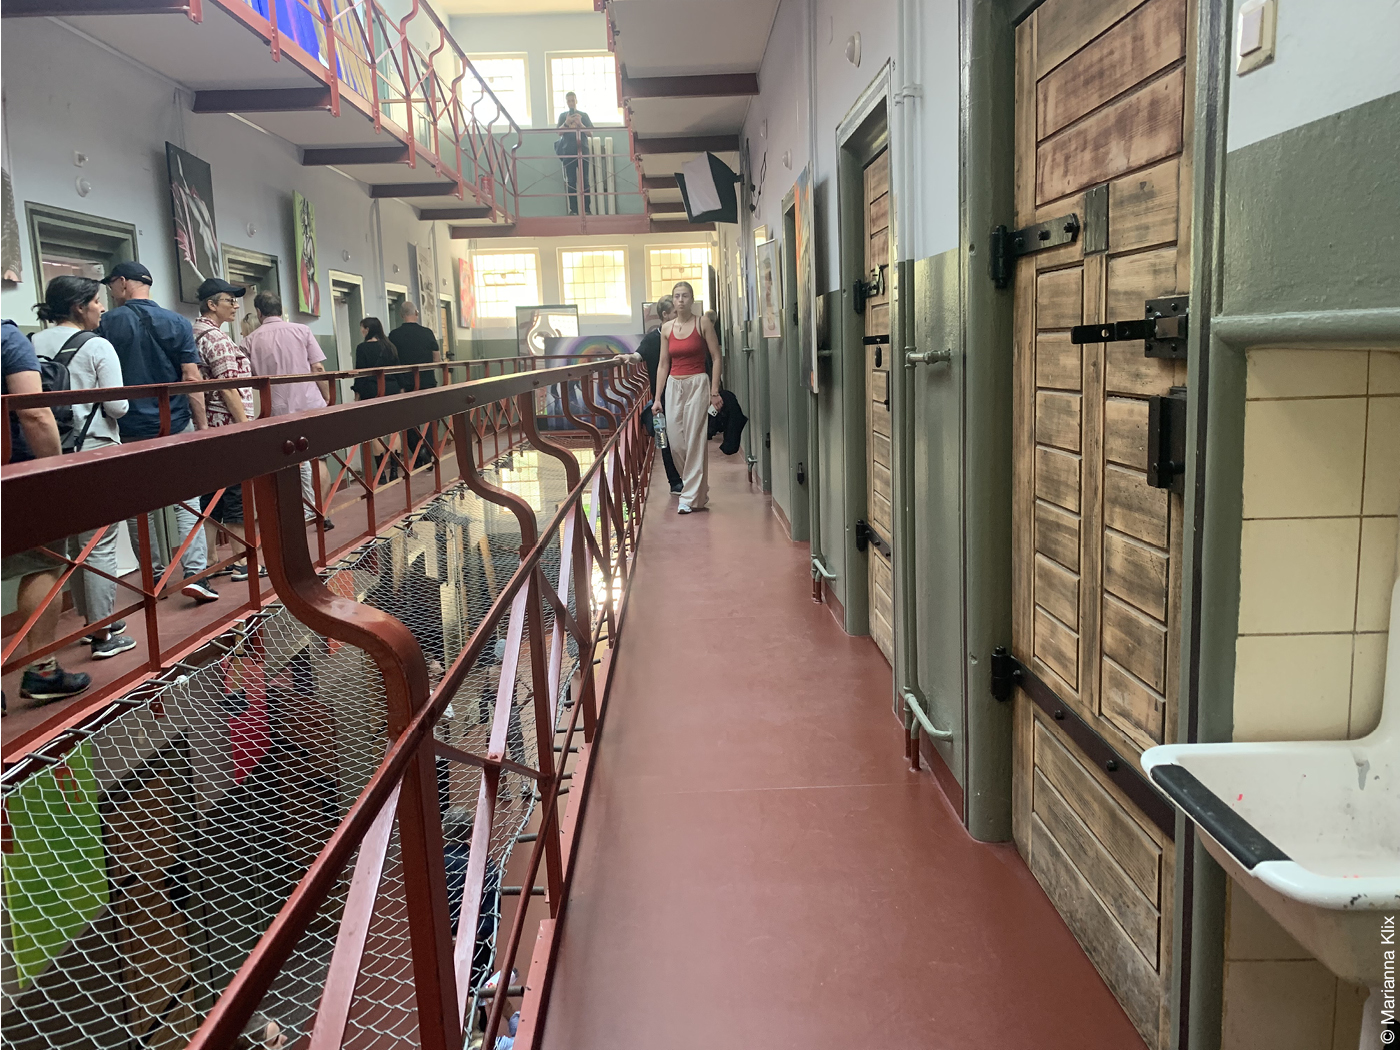 Besucher in einem ehemaligen Gefängnis am Tag der Architektur